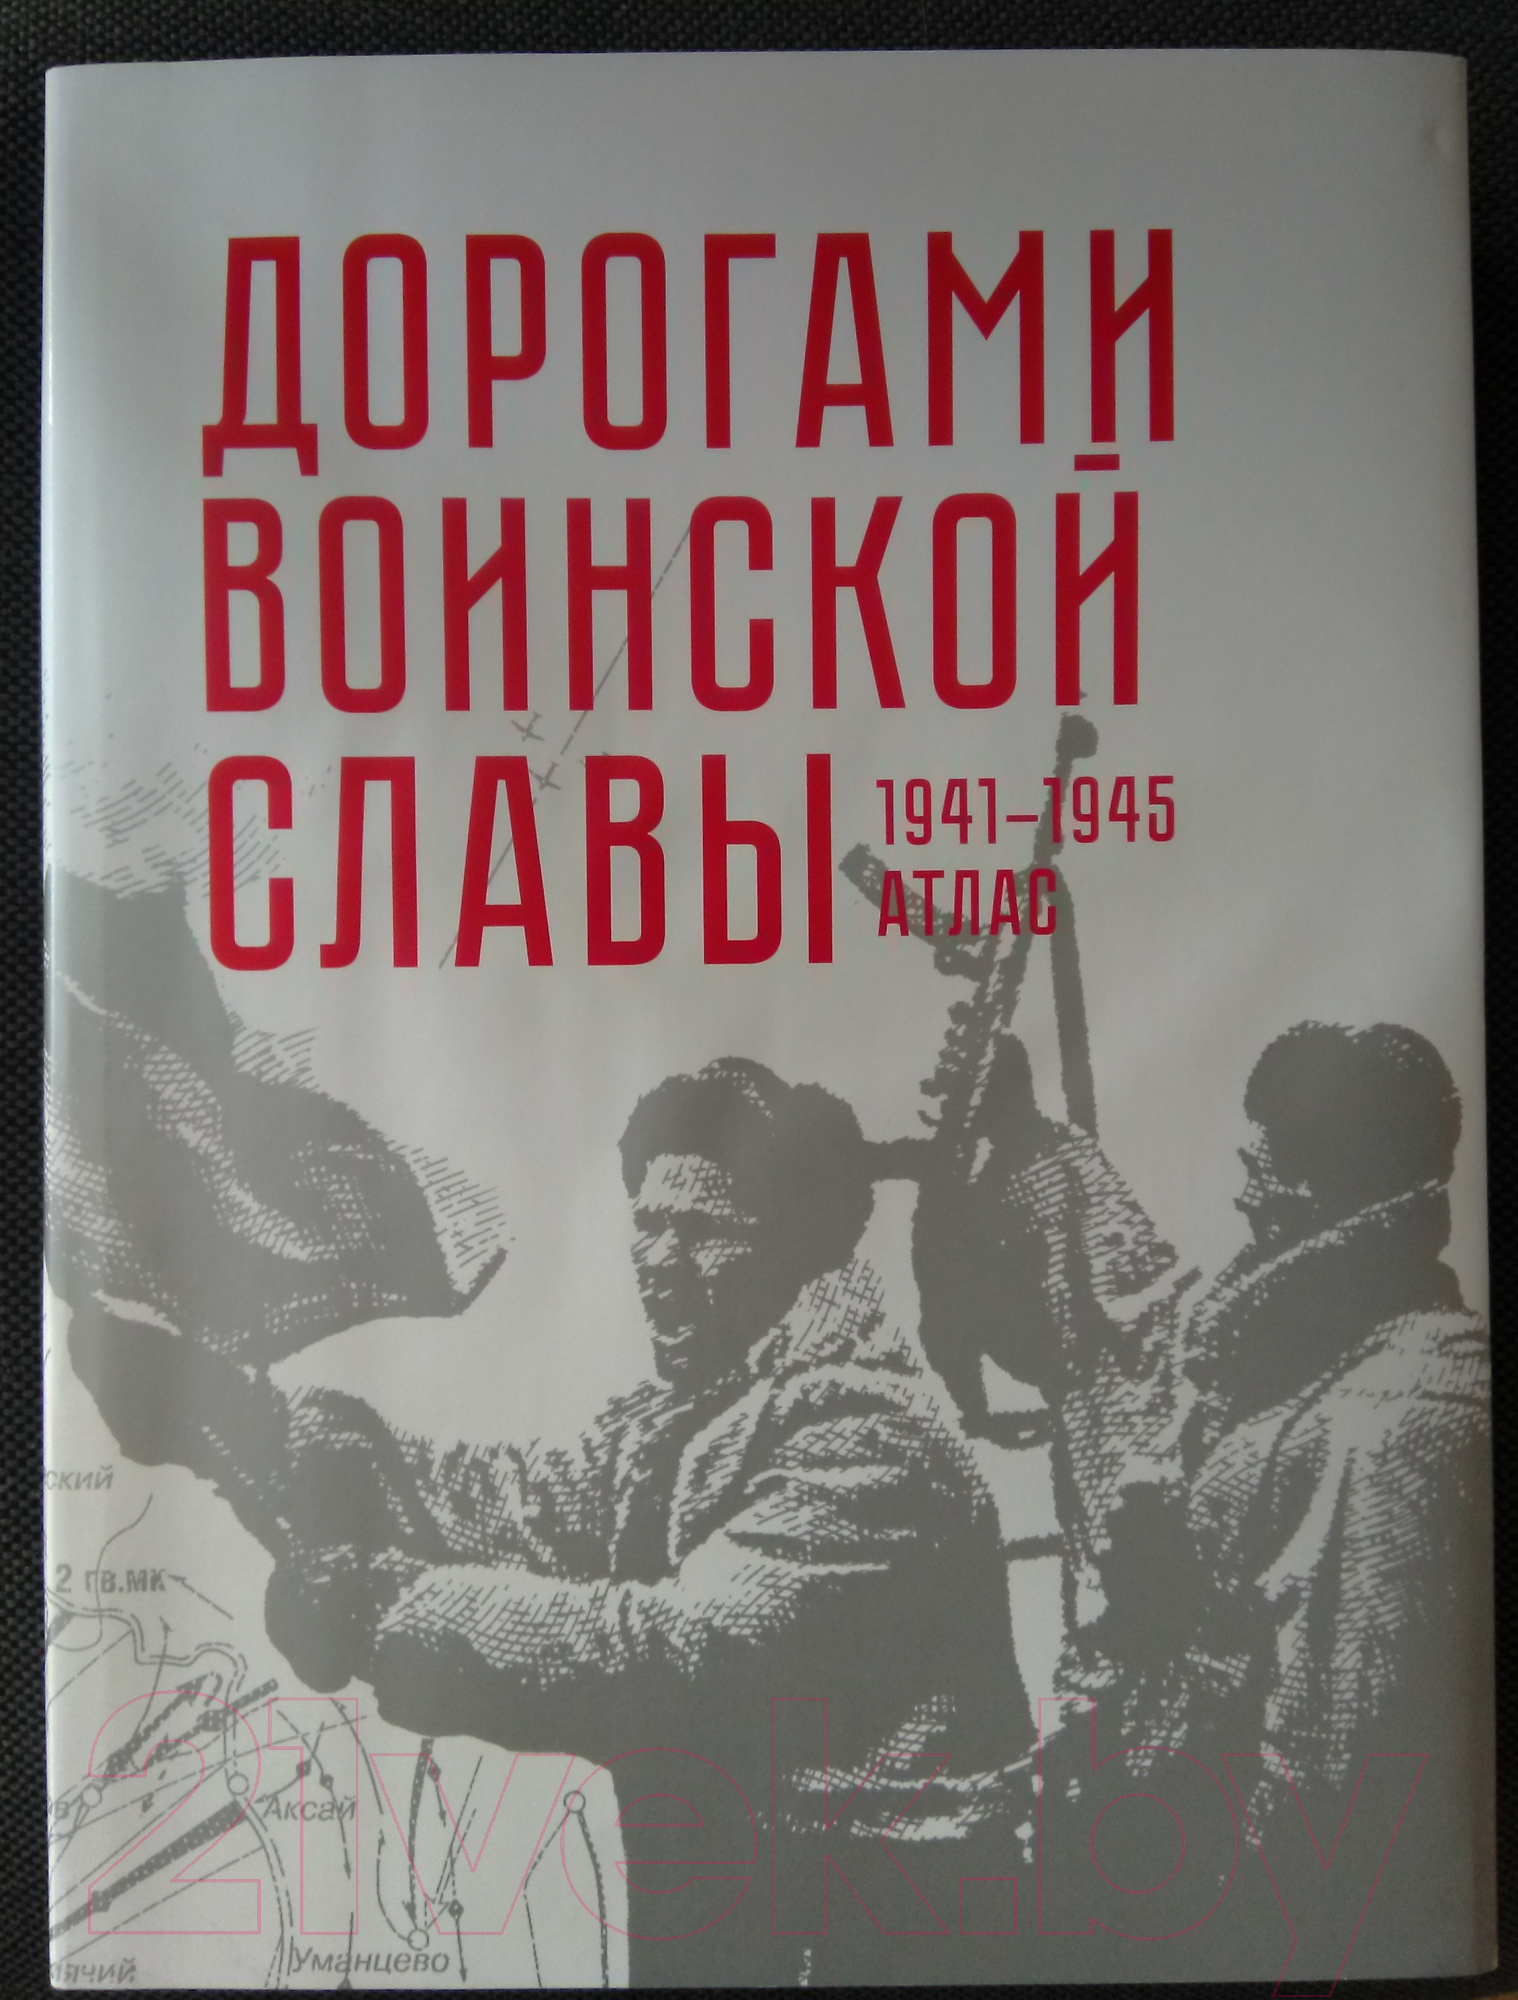 Атлас Белкартография Дорогами воинской славы 1941-1945 гг.